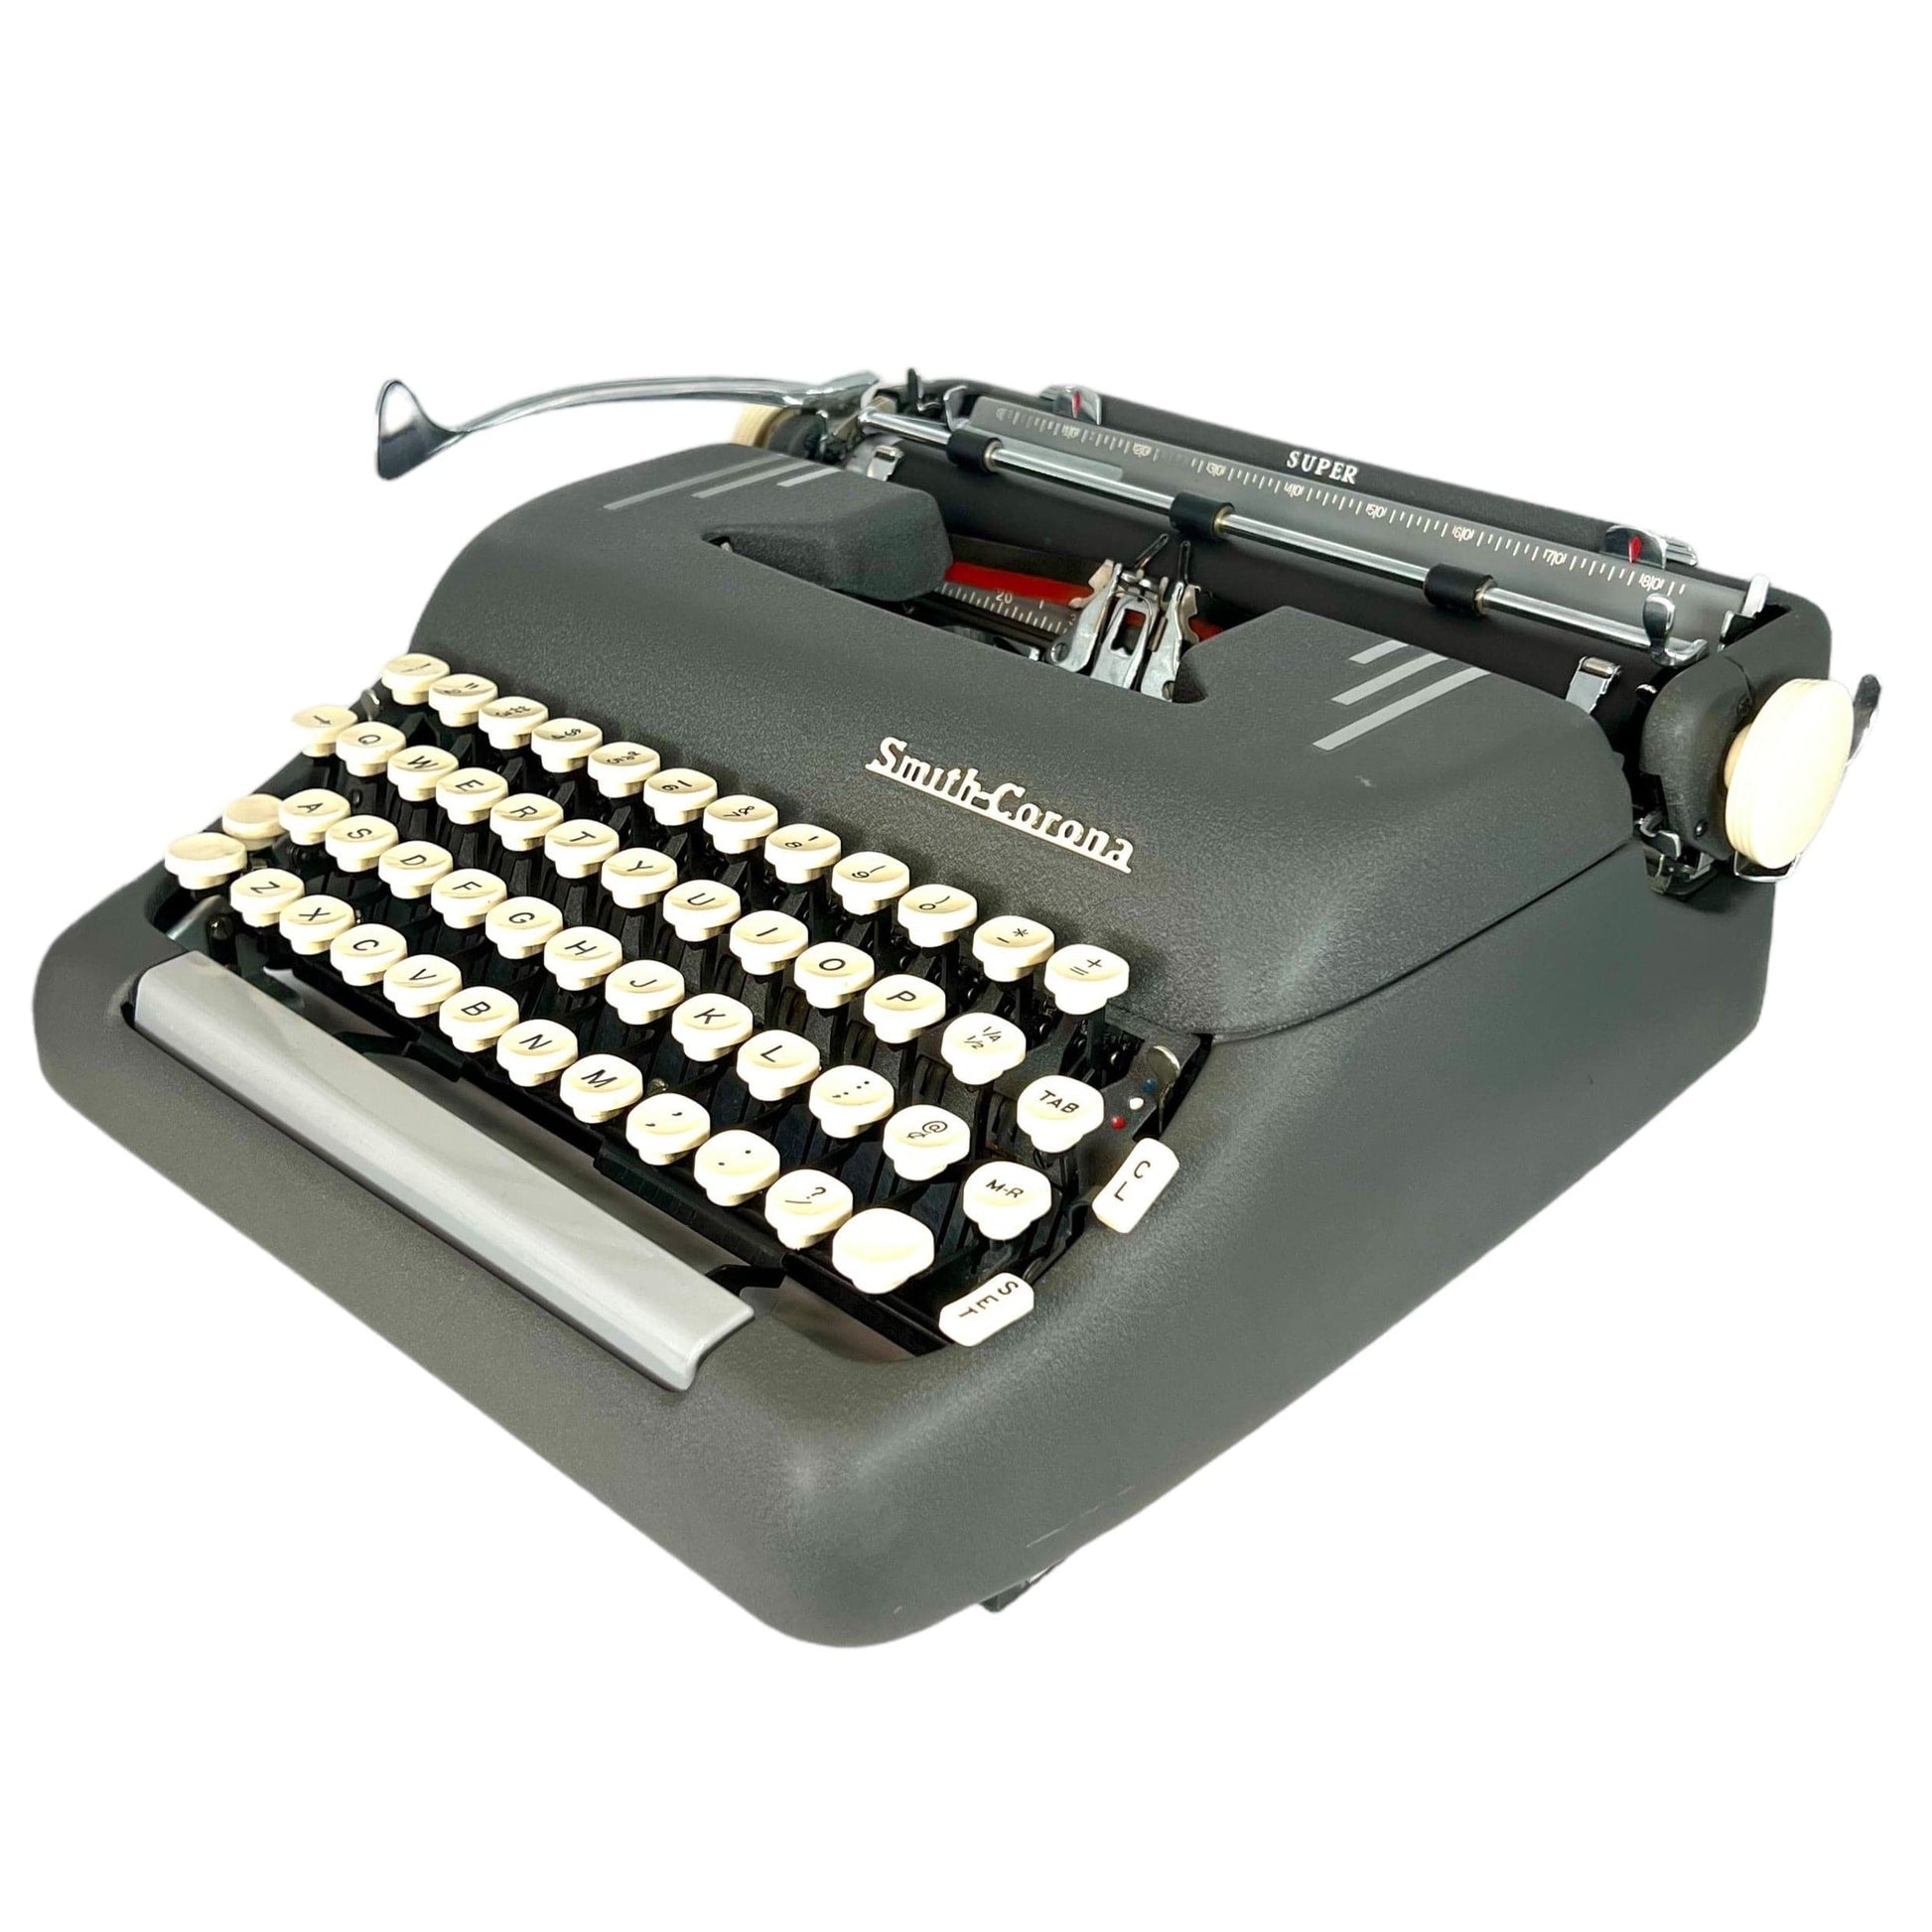 Toronto Typewriters Manual Typewriter Smith Corona Super (Charcoal) Typewriter